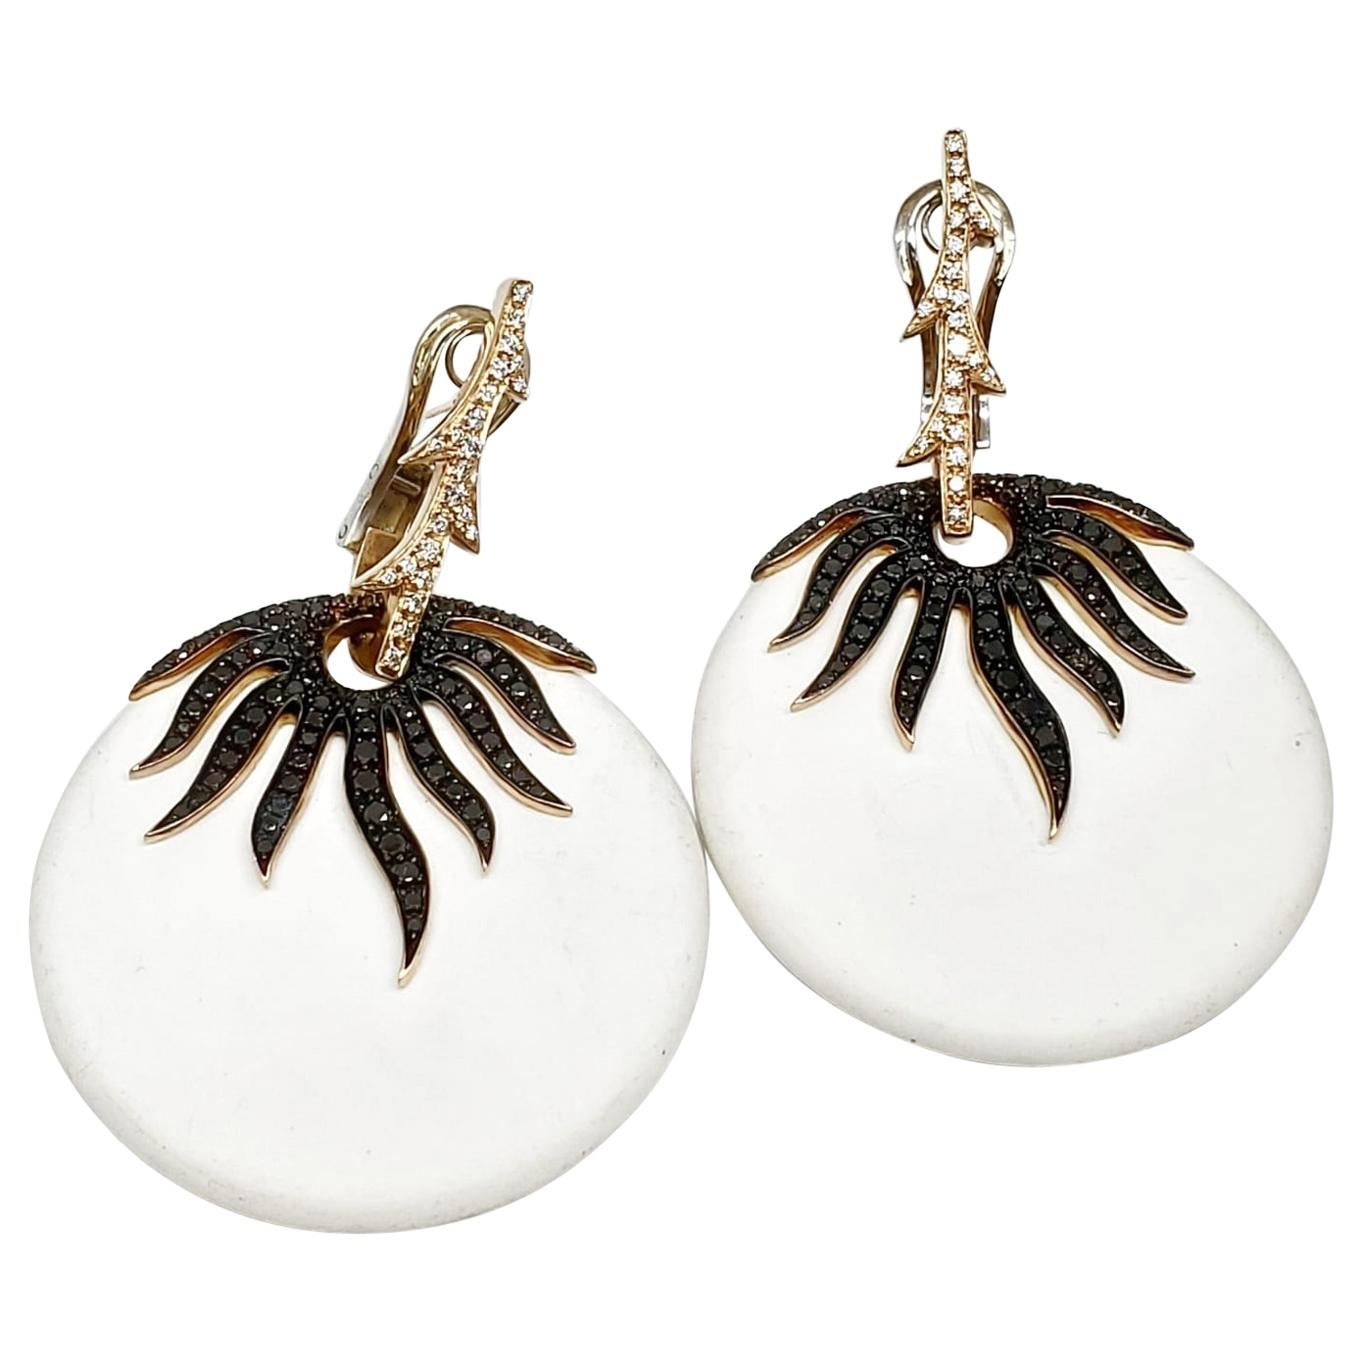 Andreoli White Agate Black and White Diamond Earrings 18 Karat Rose Gold